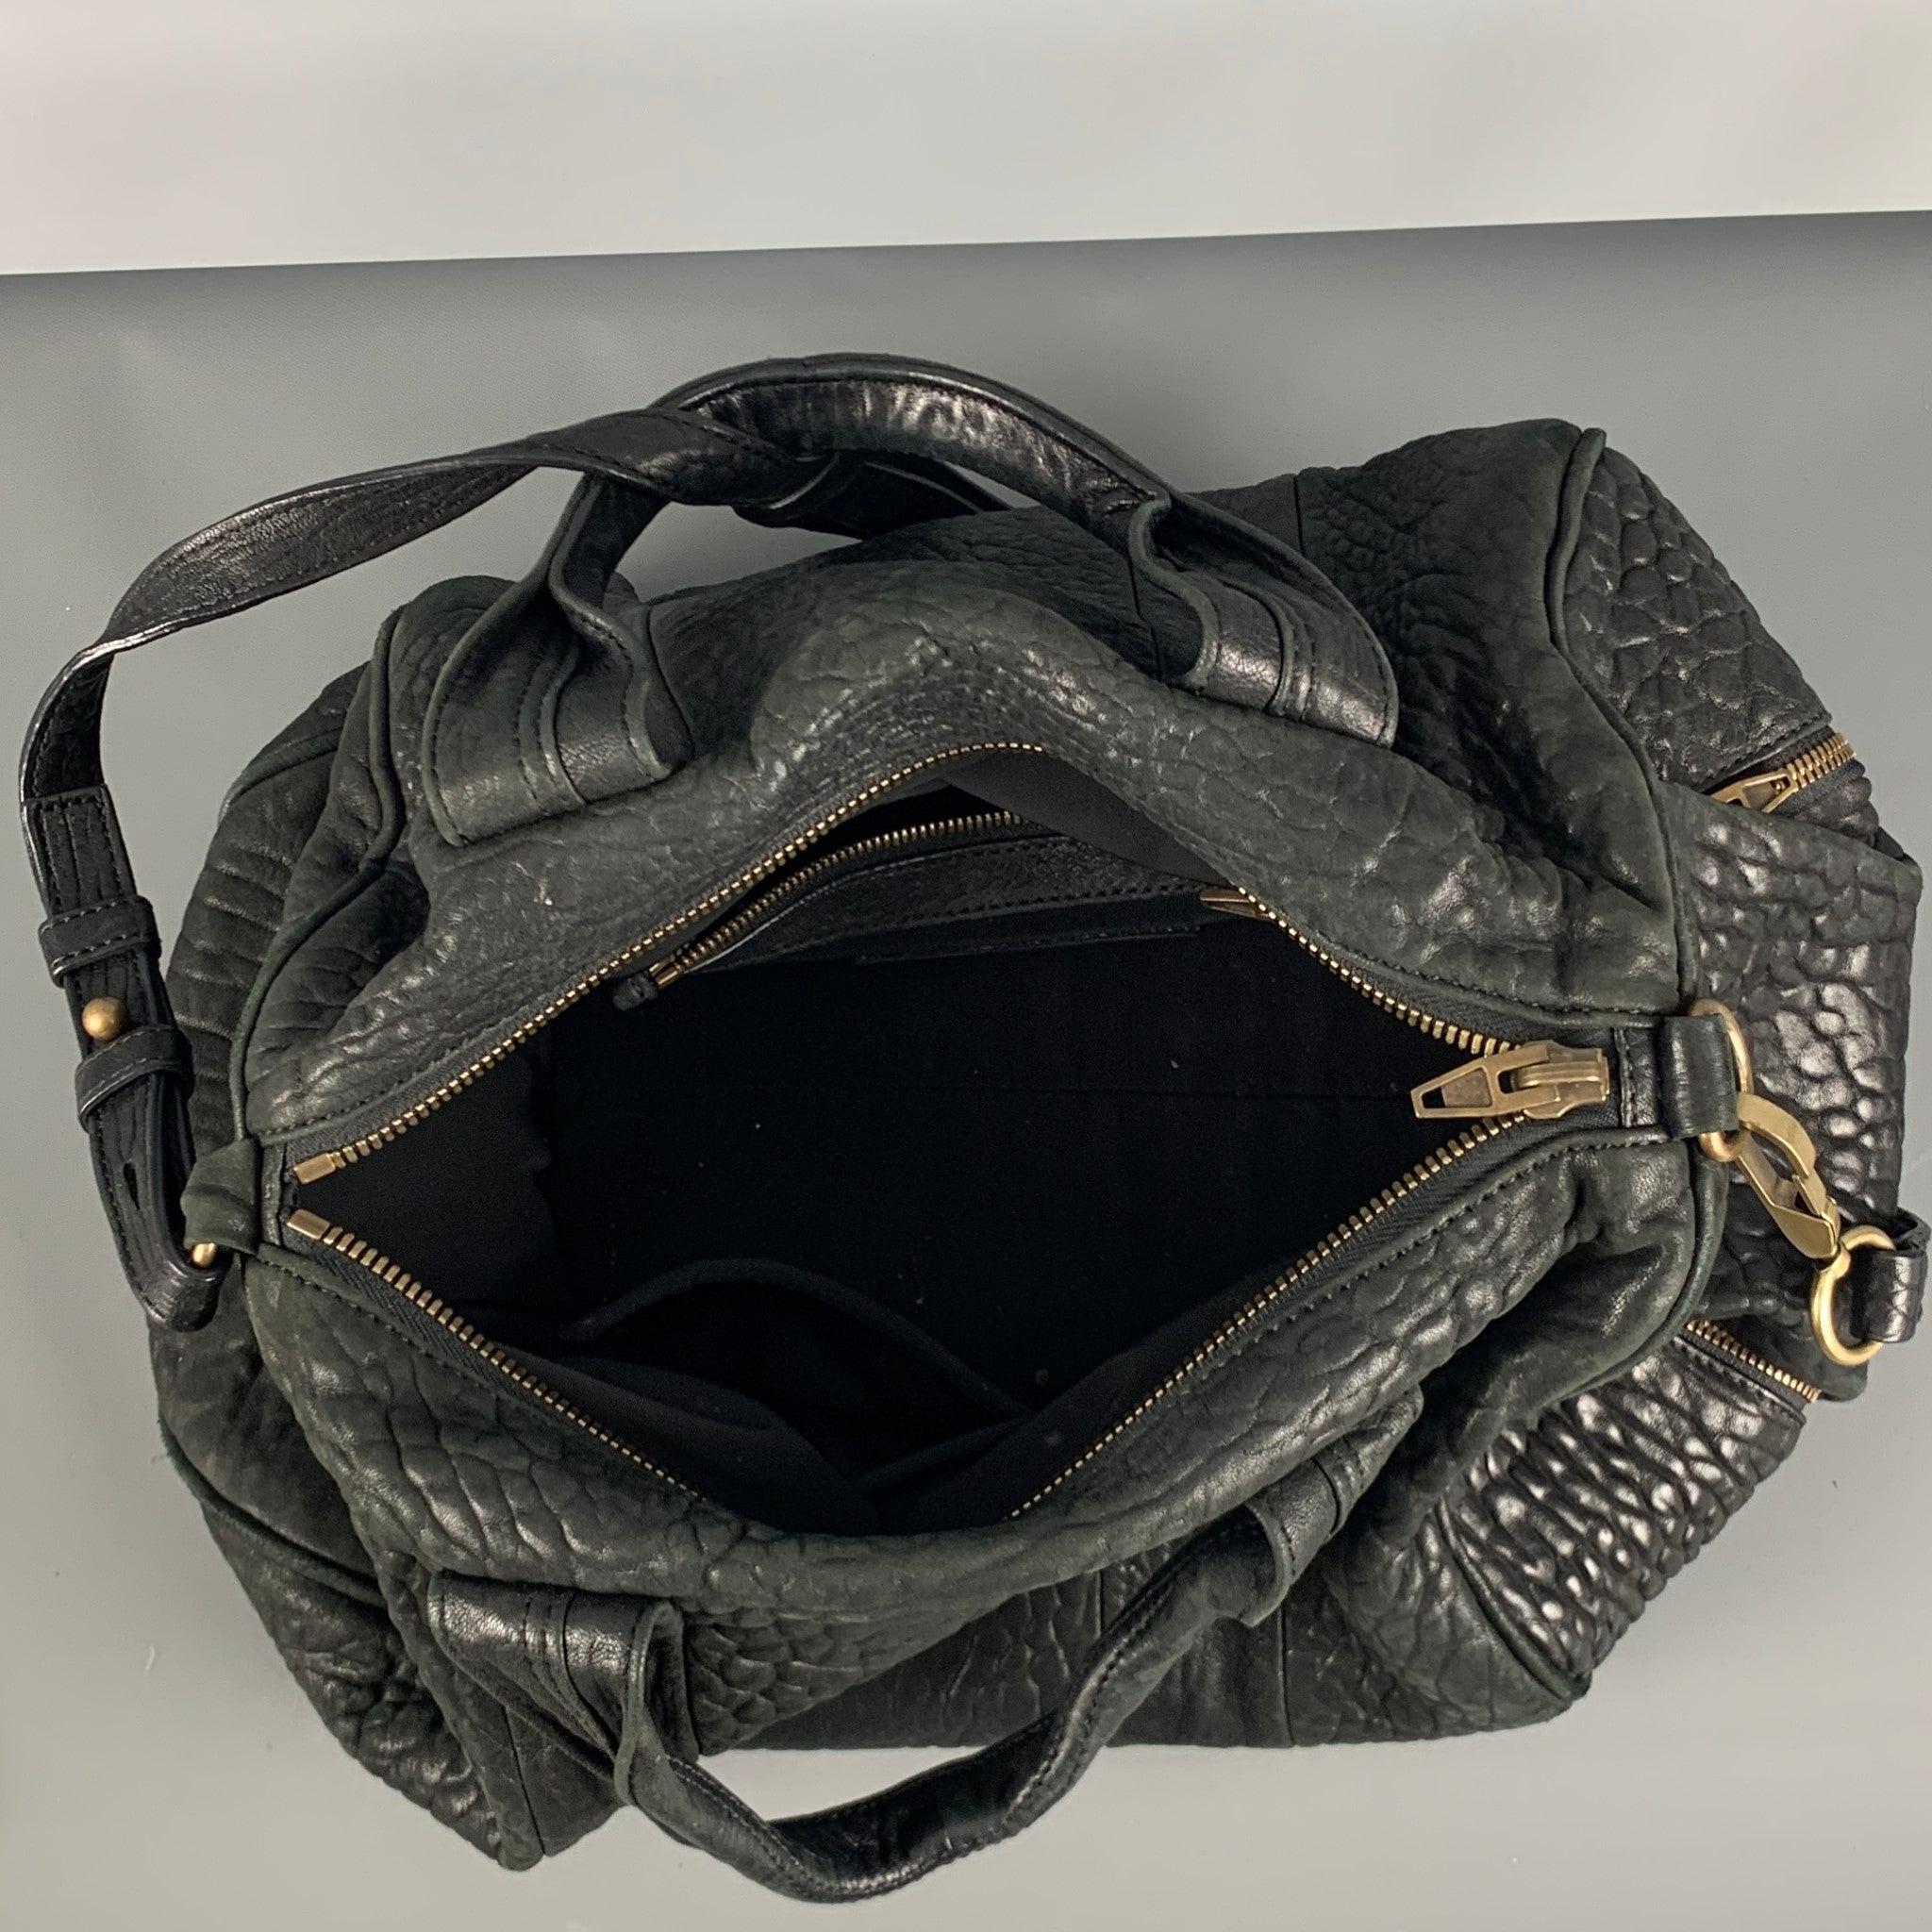 ALEXANDER WANG Black Wrinkled Leather Handbag For Sale 1